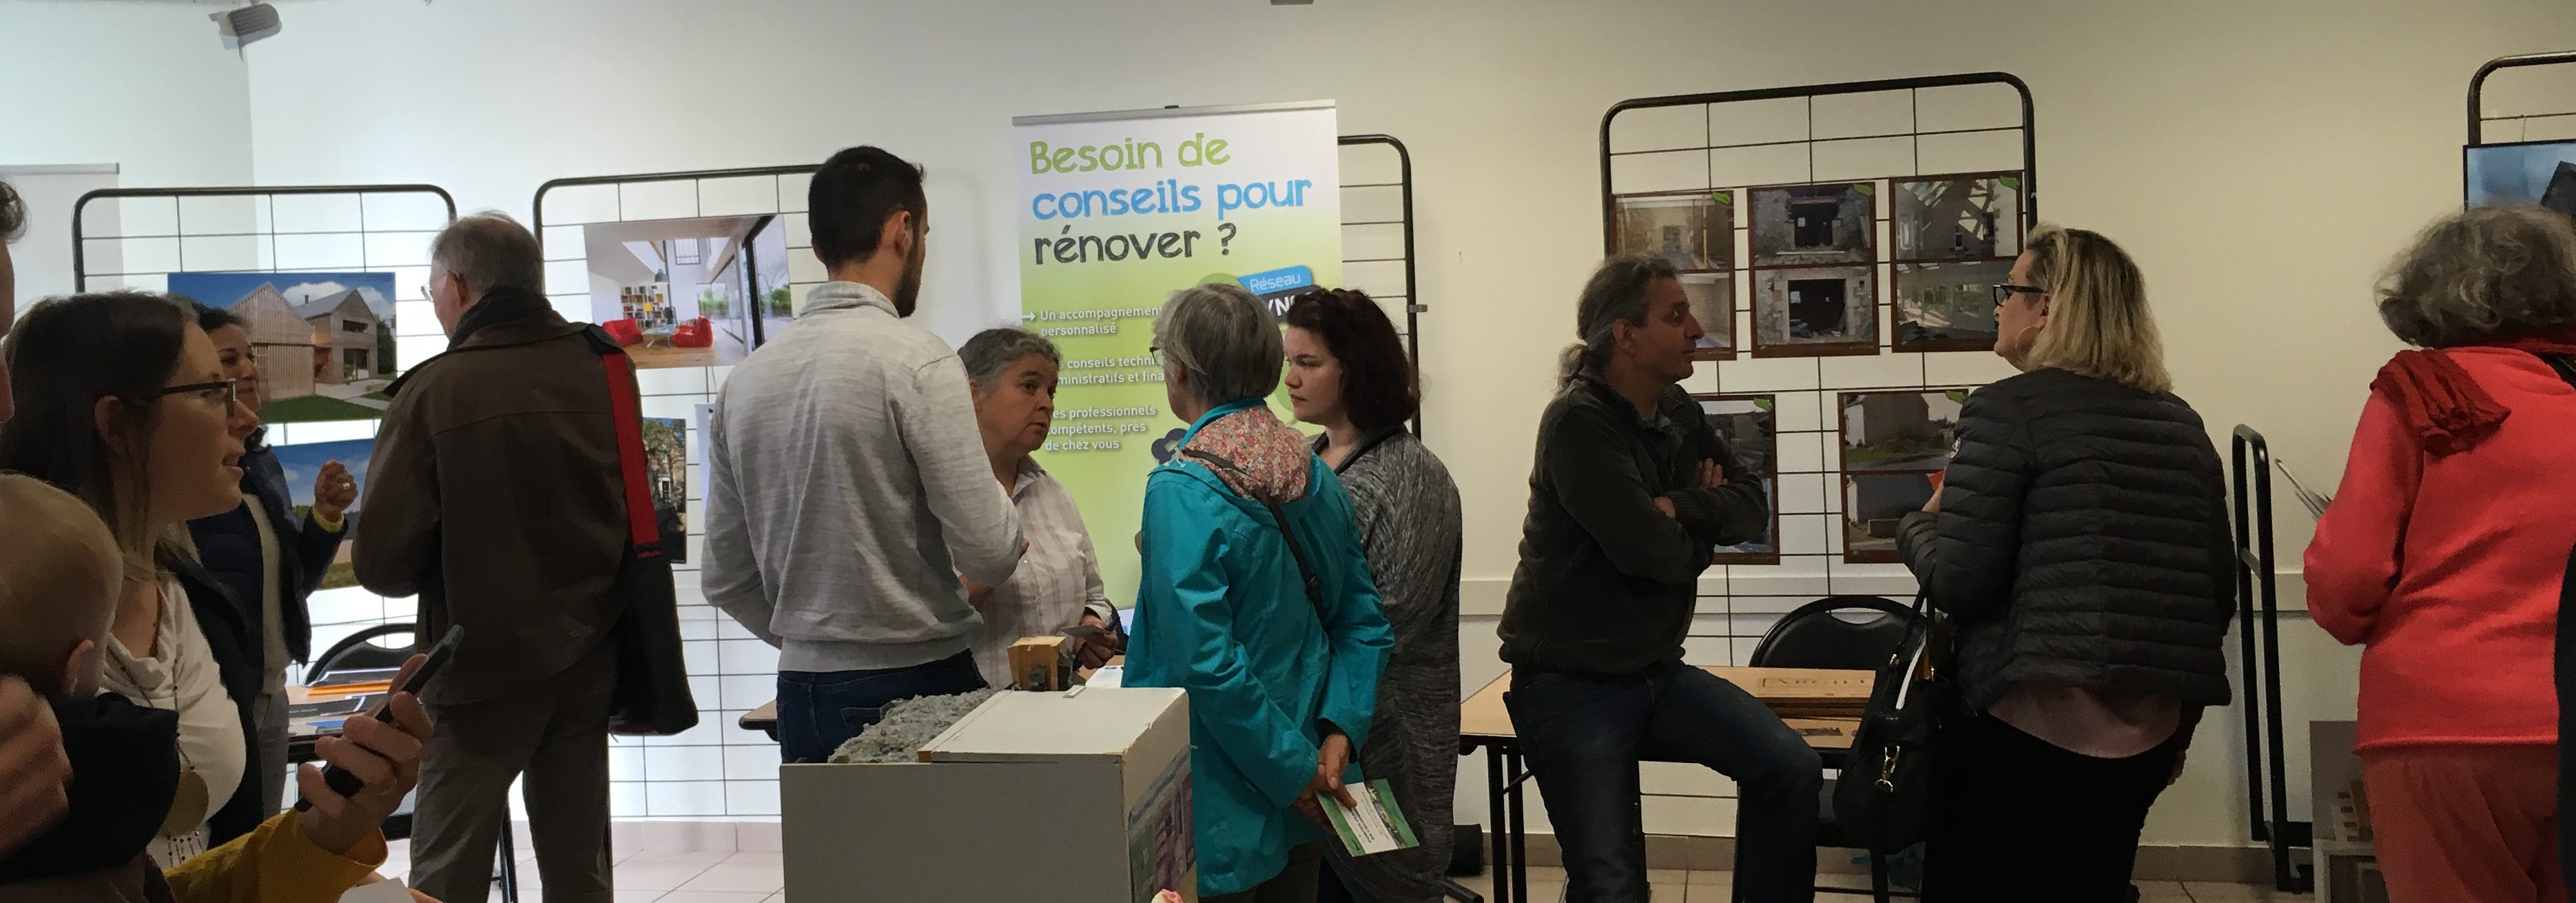 Forum de la rénovation de lhabitat Plonéour-Lanvern 8 juin 2019, côté stands intérieurs